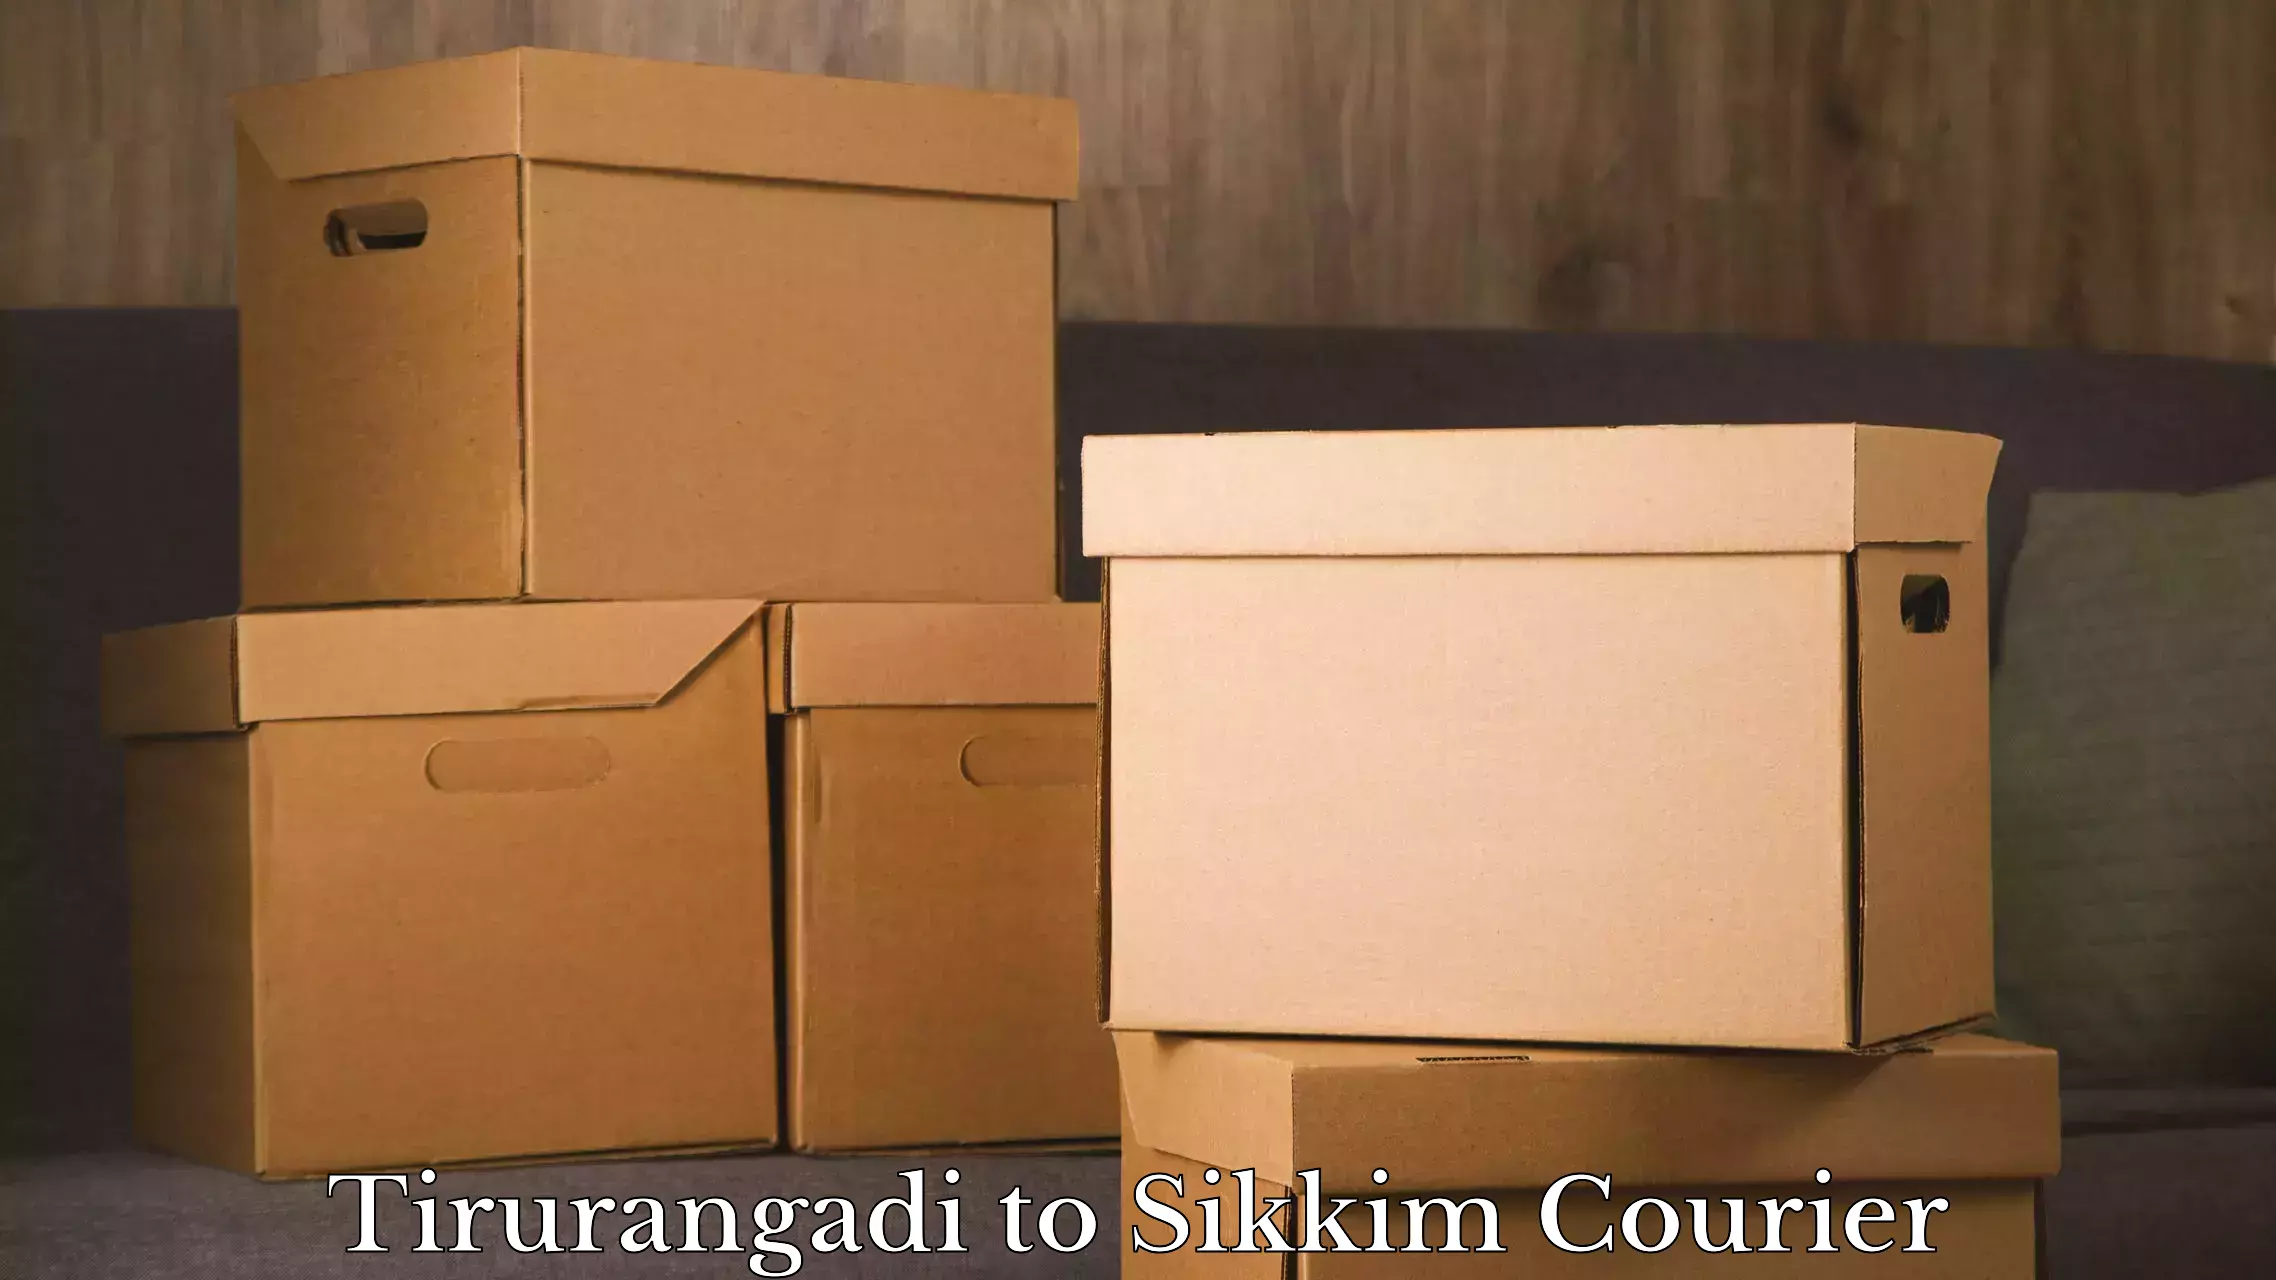 Luggage transit service Tirurangadi to Sikkim